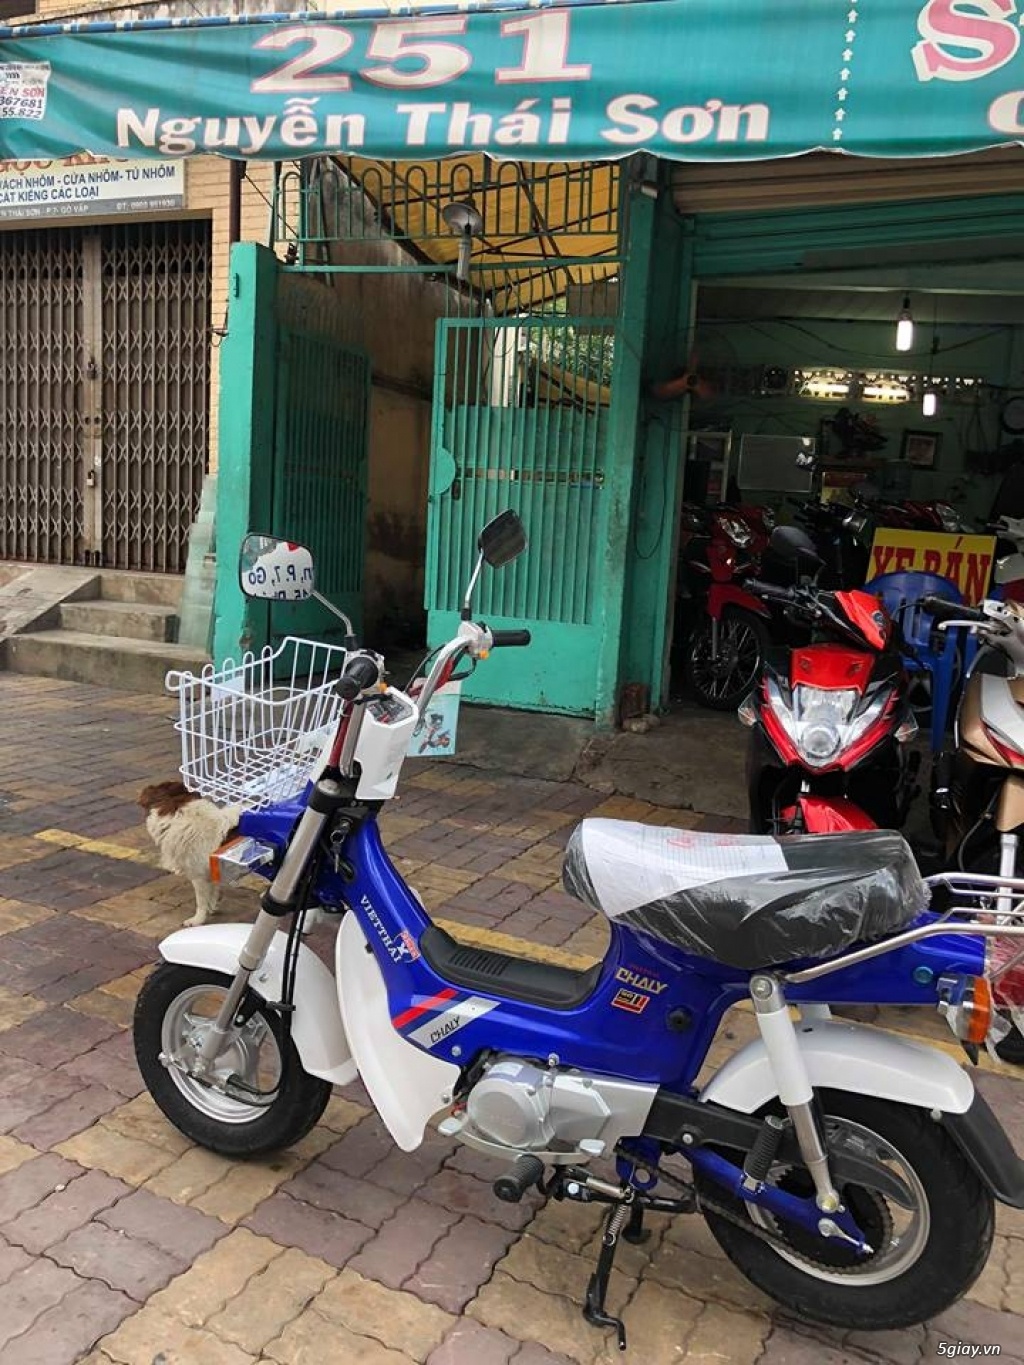 Honda Chaly 50  kỷ vật 16 năm ở Sài Gòn  VnExpress